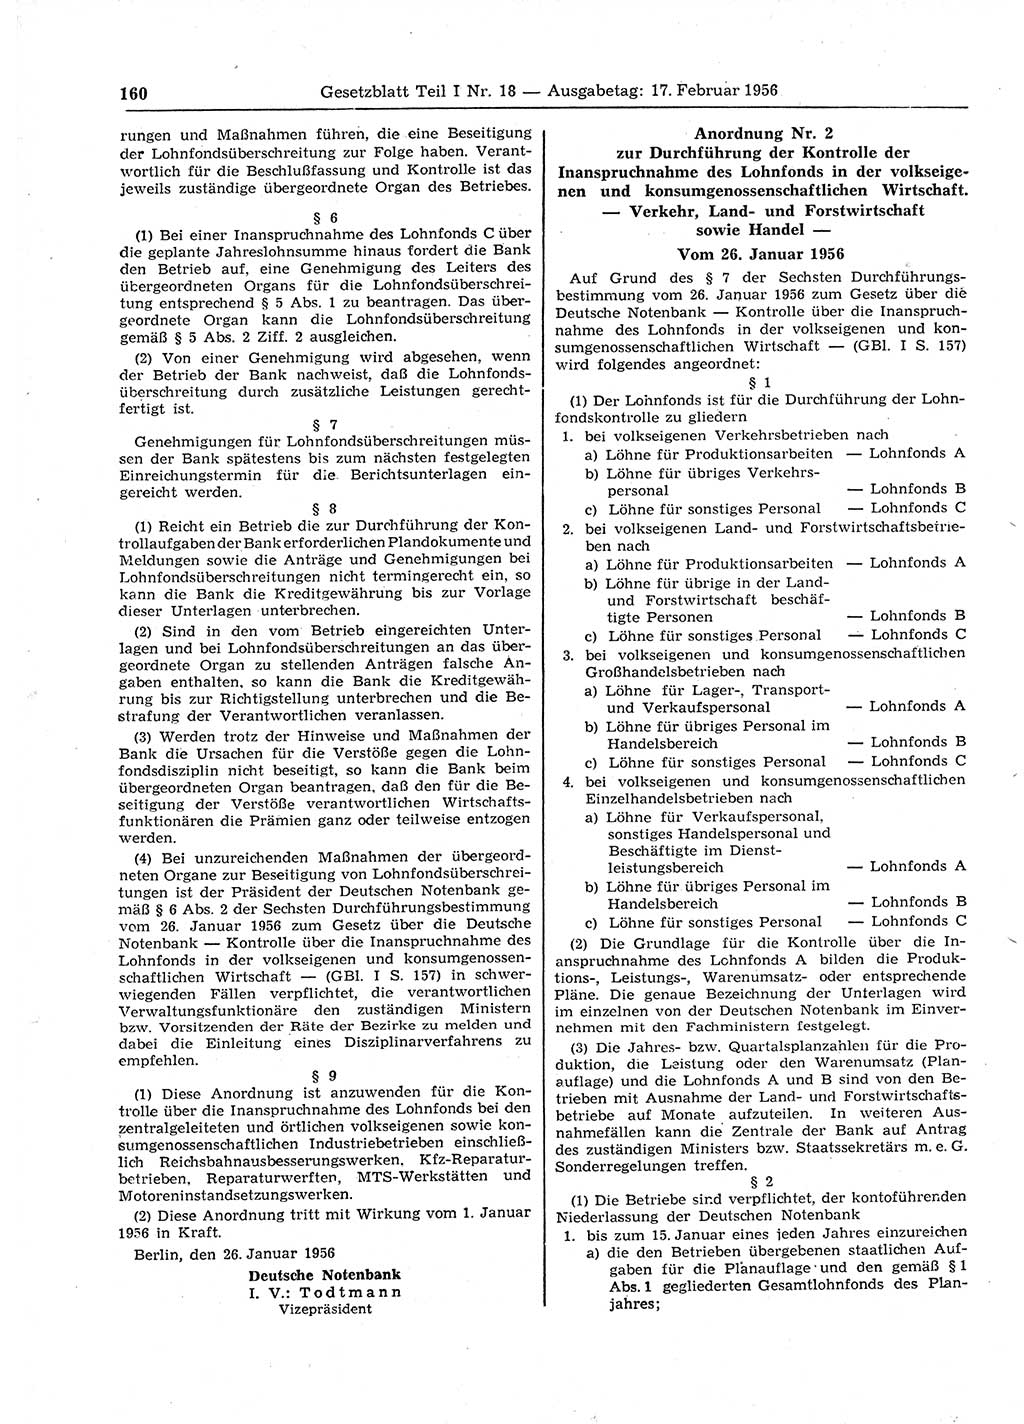 Gesetzblatt (GBl.) der Deutschen Demokratischen Republik (DDR) Teil Ⅰ 1956, Seite 160 (GBl. DDR Ⅰ 1956, S. 160)